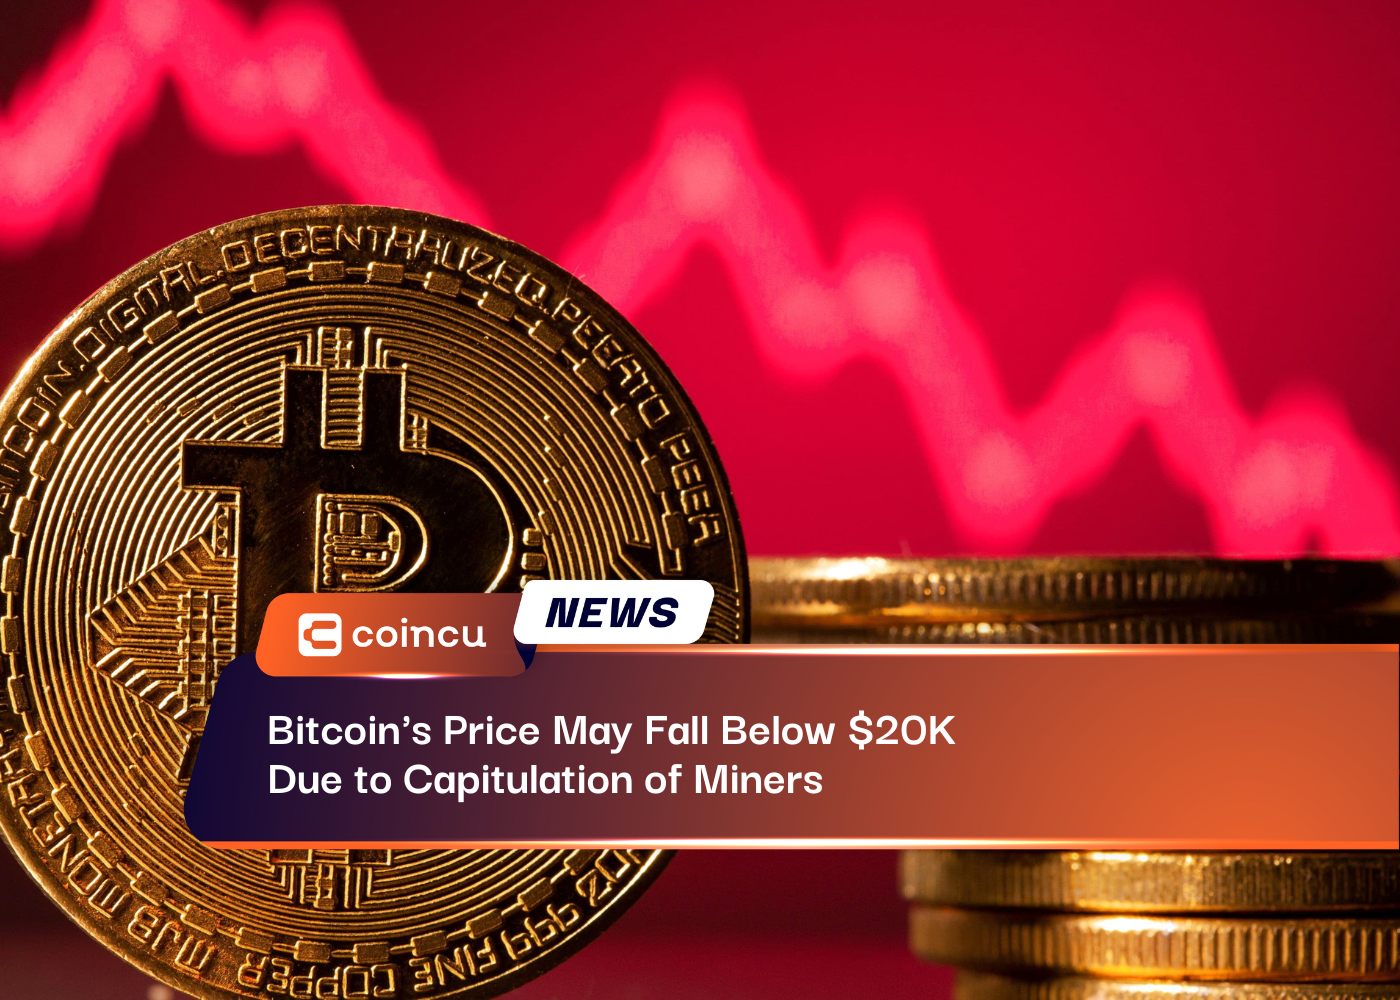 El precio de Bitcoin puede caer por debajo de los 20 dólares debido a la capitulación de los mineros